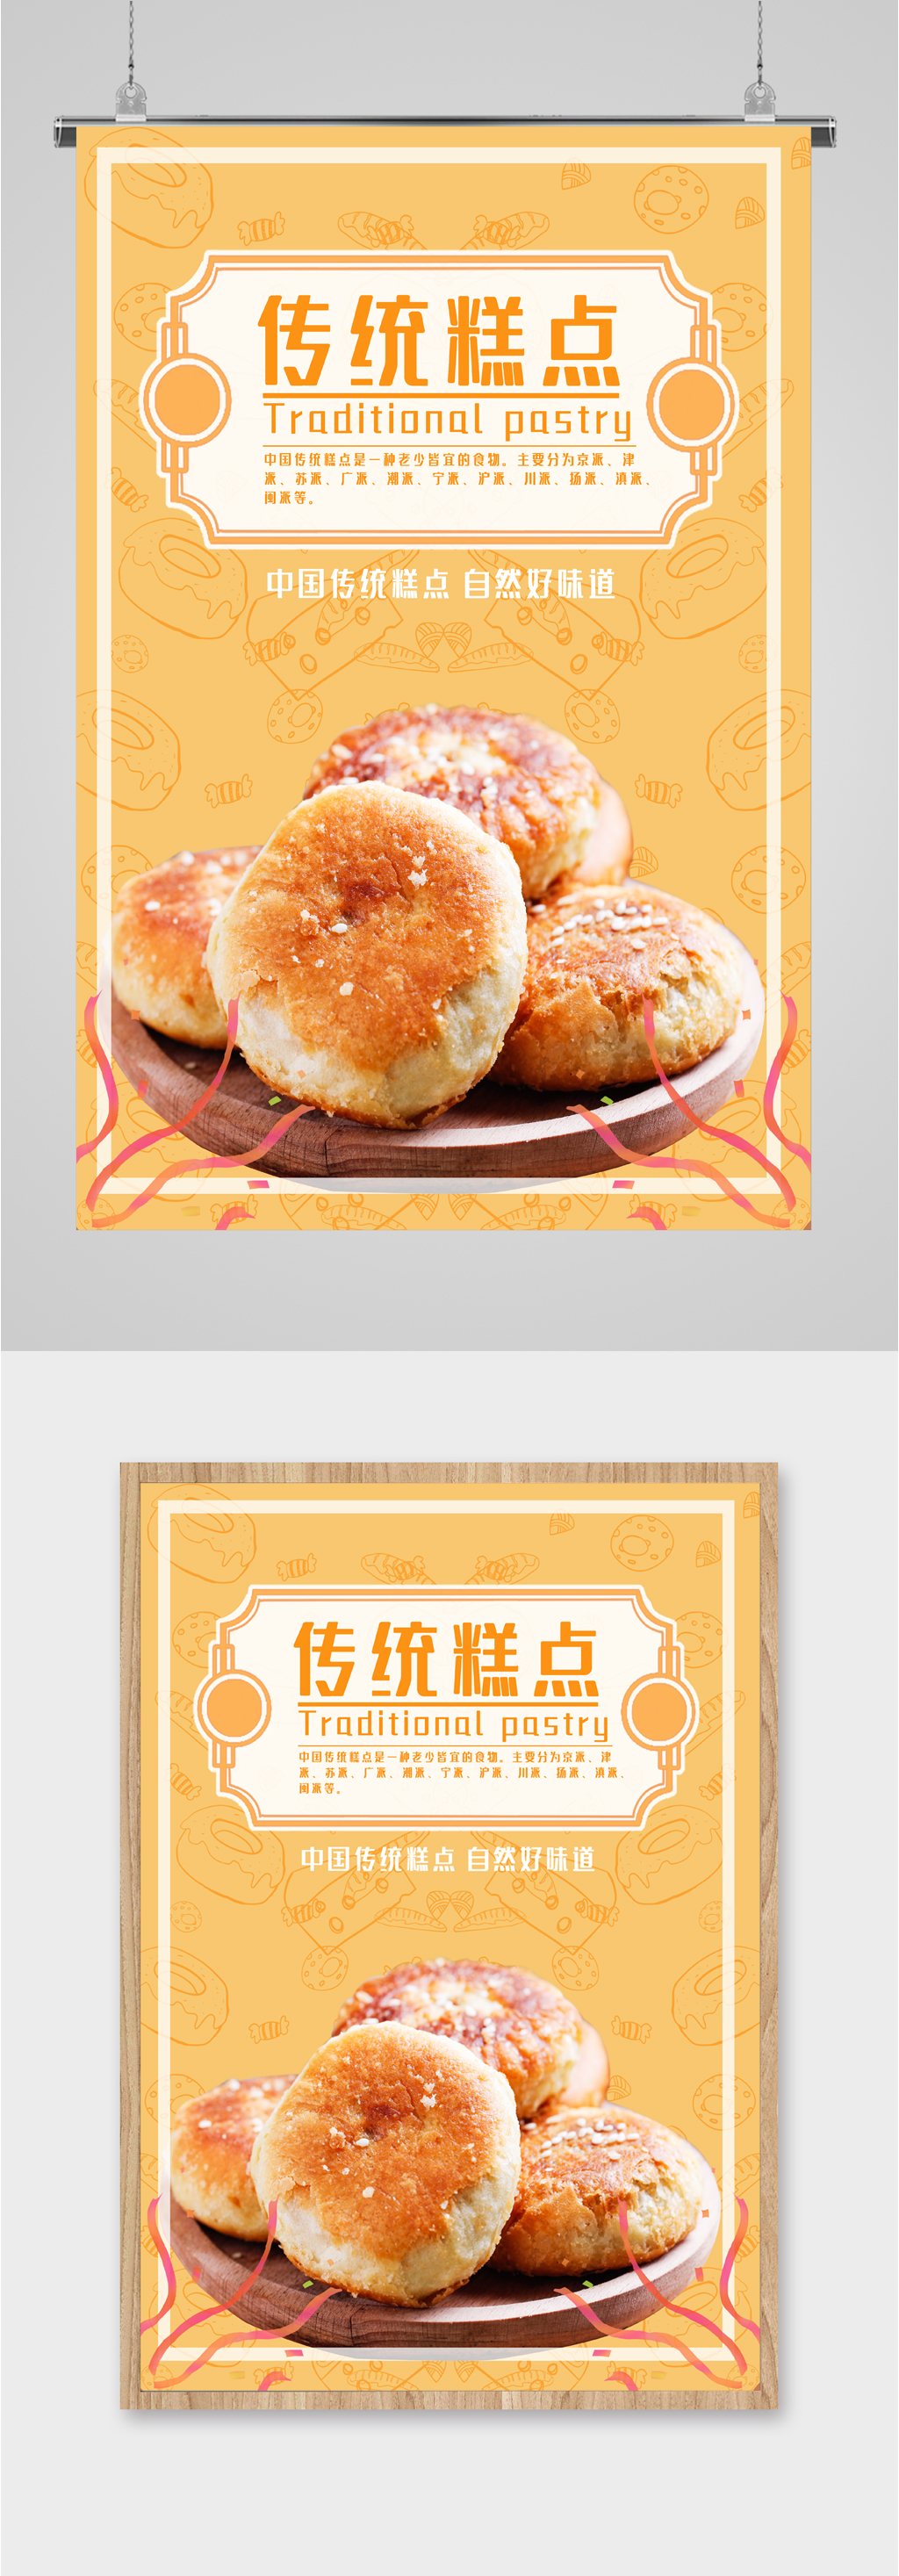 中国传统糕点海报